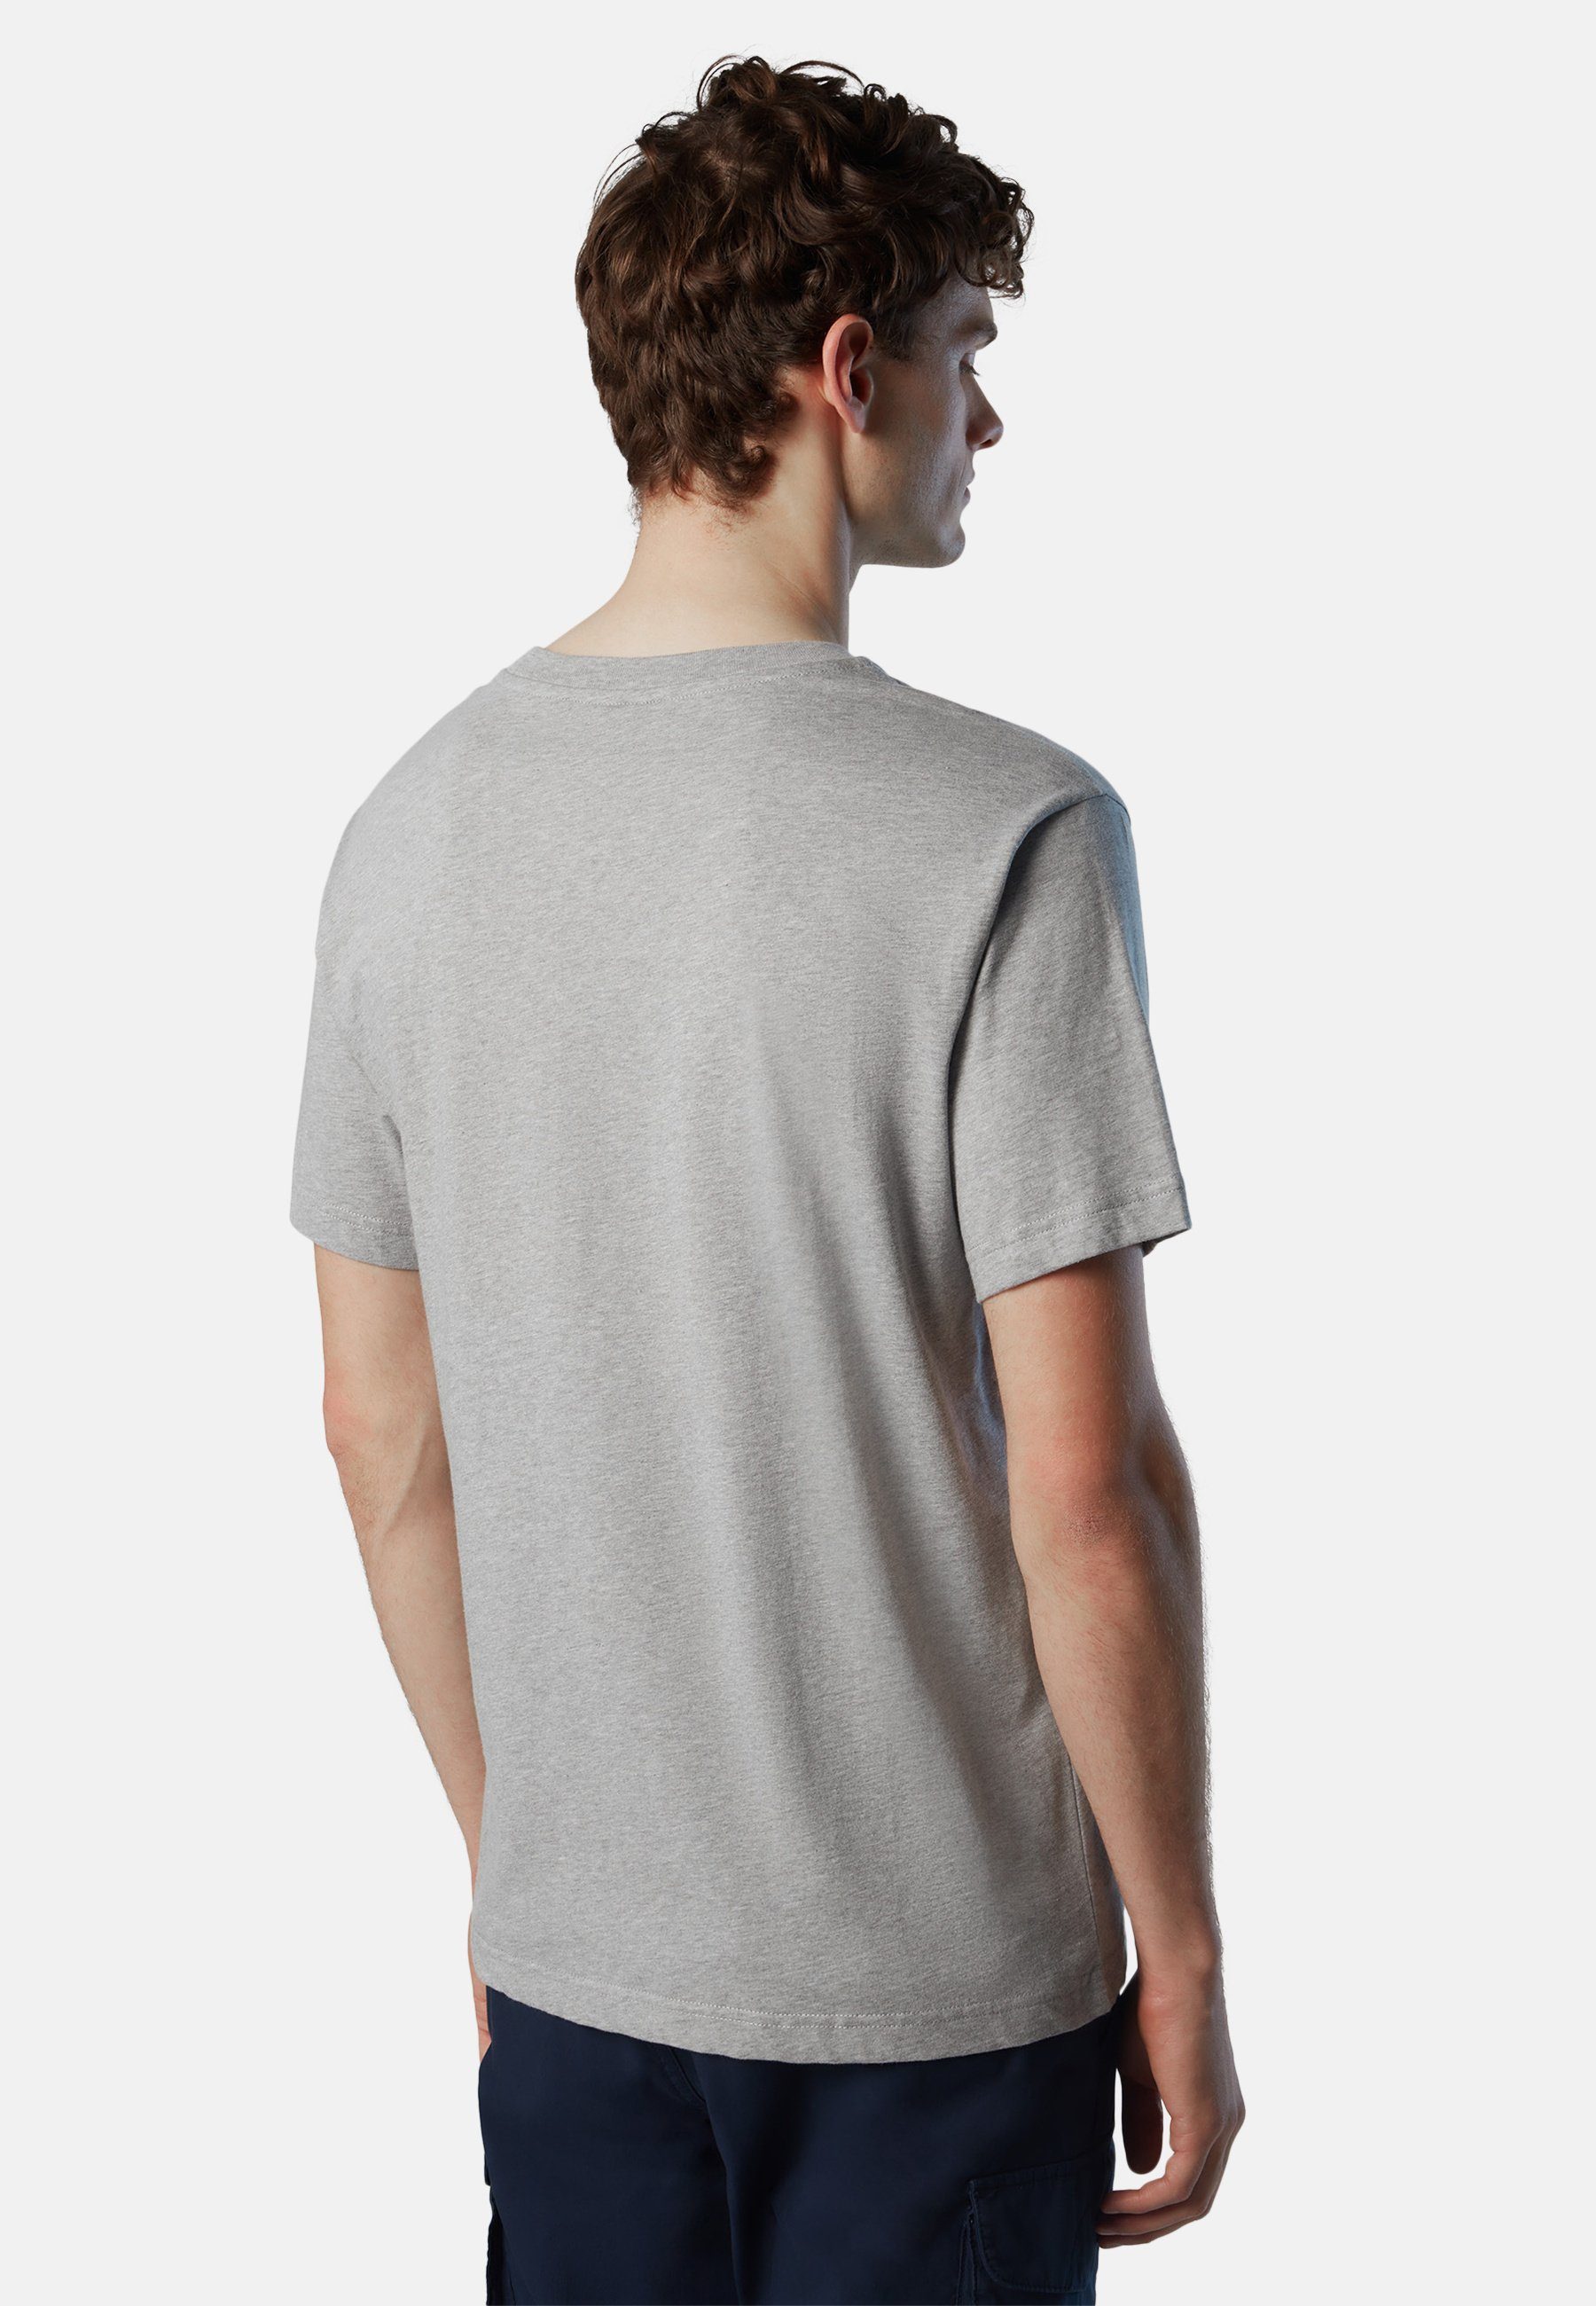 T-Shirt Brustaufdruck grey mit T-Shirt North Sails